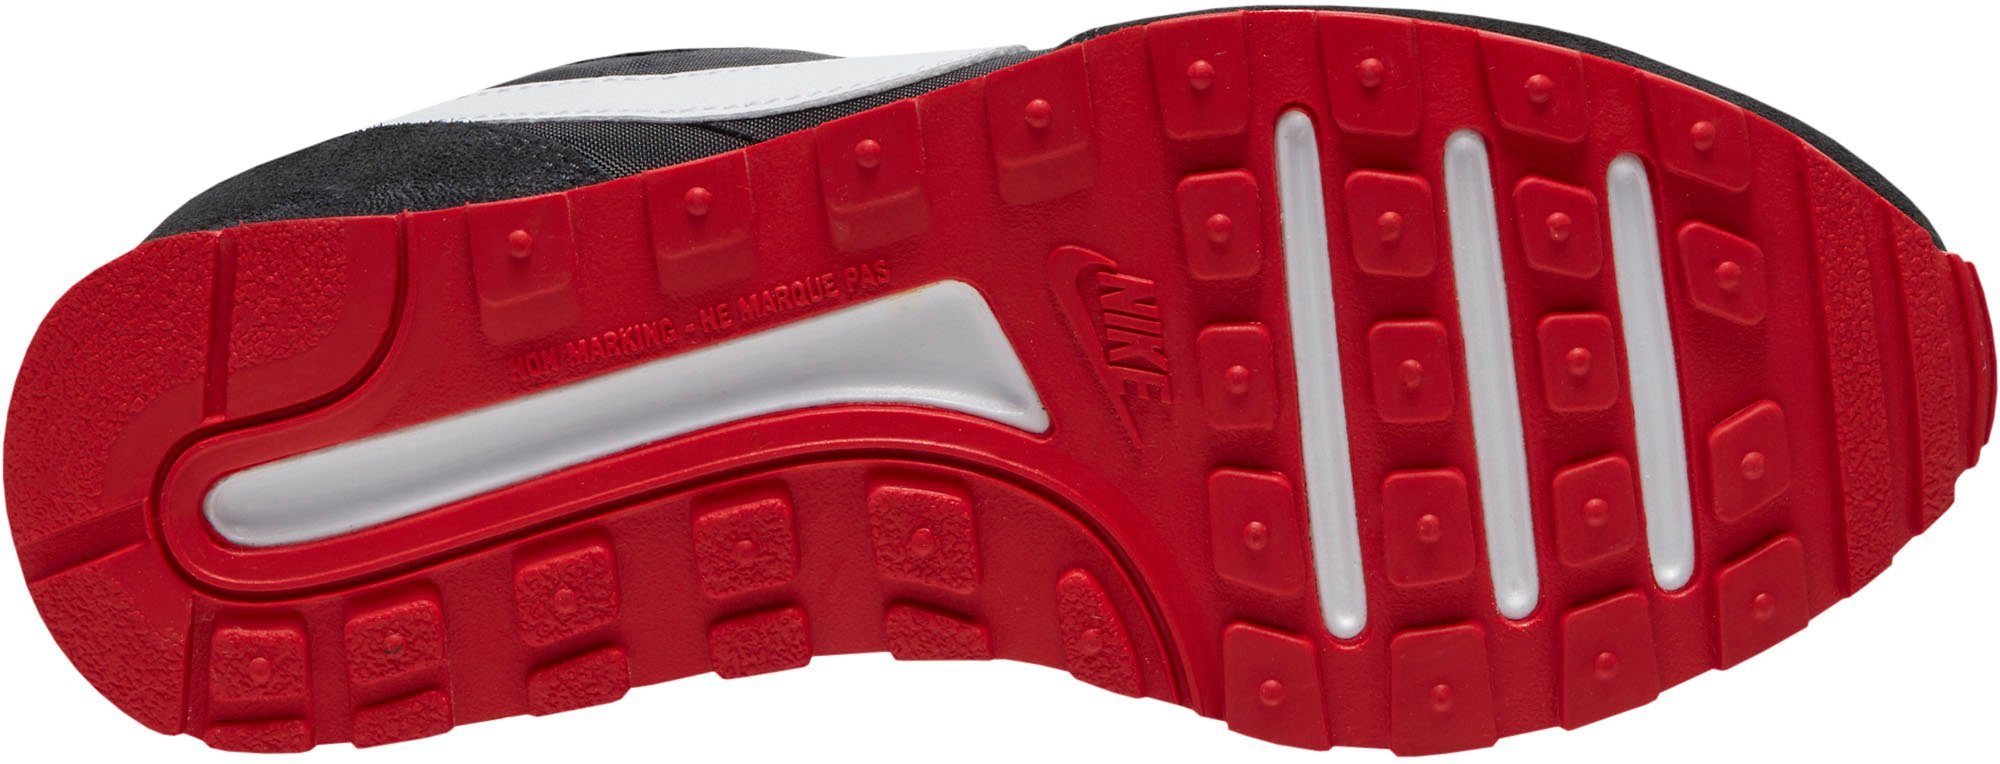 Sneaker VALIANT MD BLACK-WHITE-DK-SMOKE-GREY-UNIVERSITY-RED Nike Sportswear (GS)